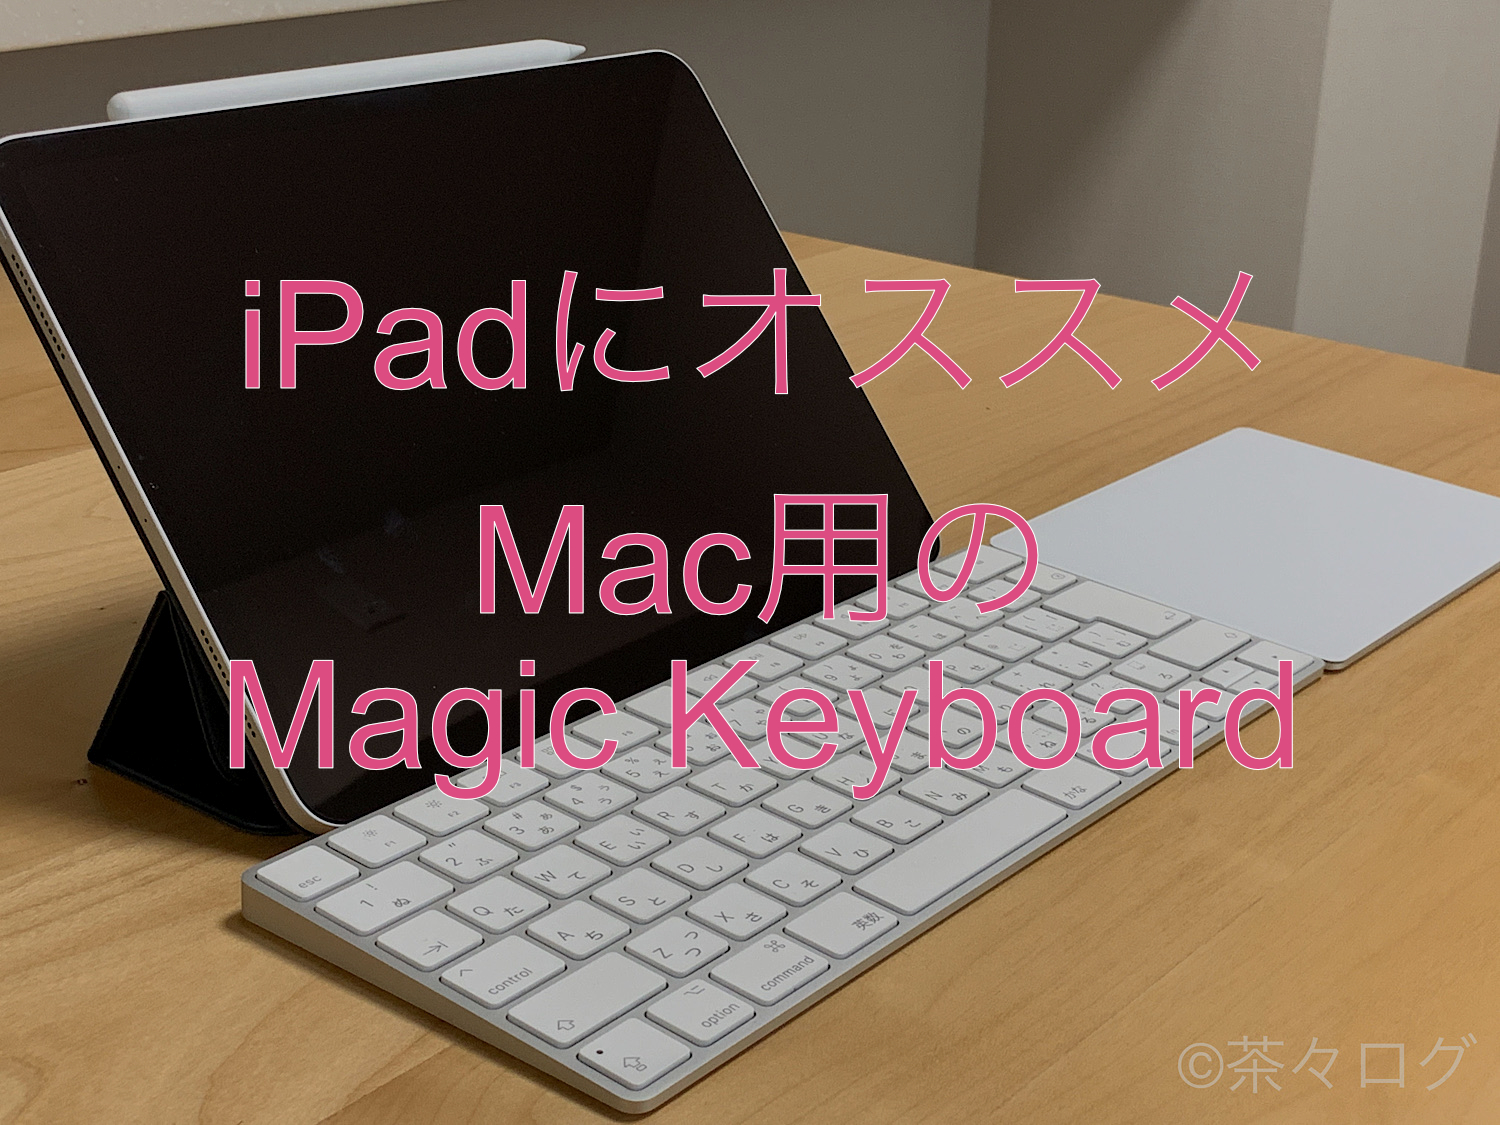 結論が出た！】iPadに最適なキーボードはMac用のMagic Keyboard | 茶々ログ